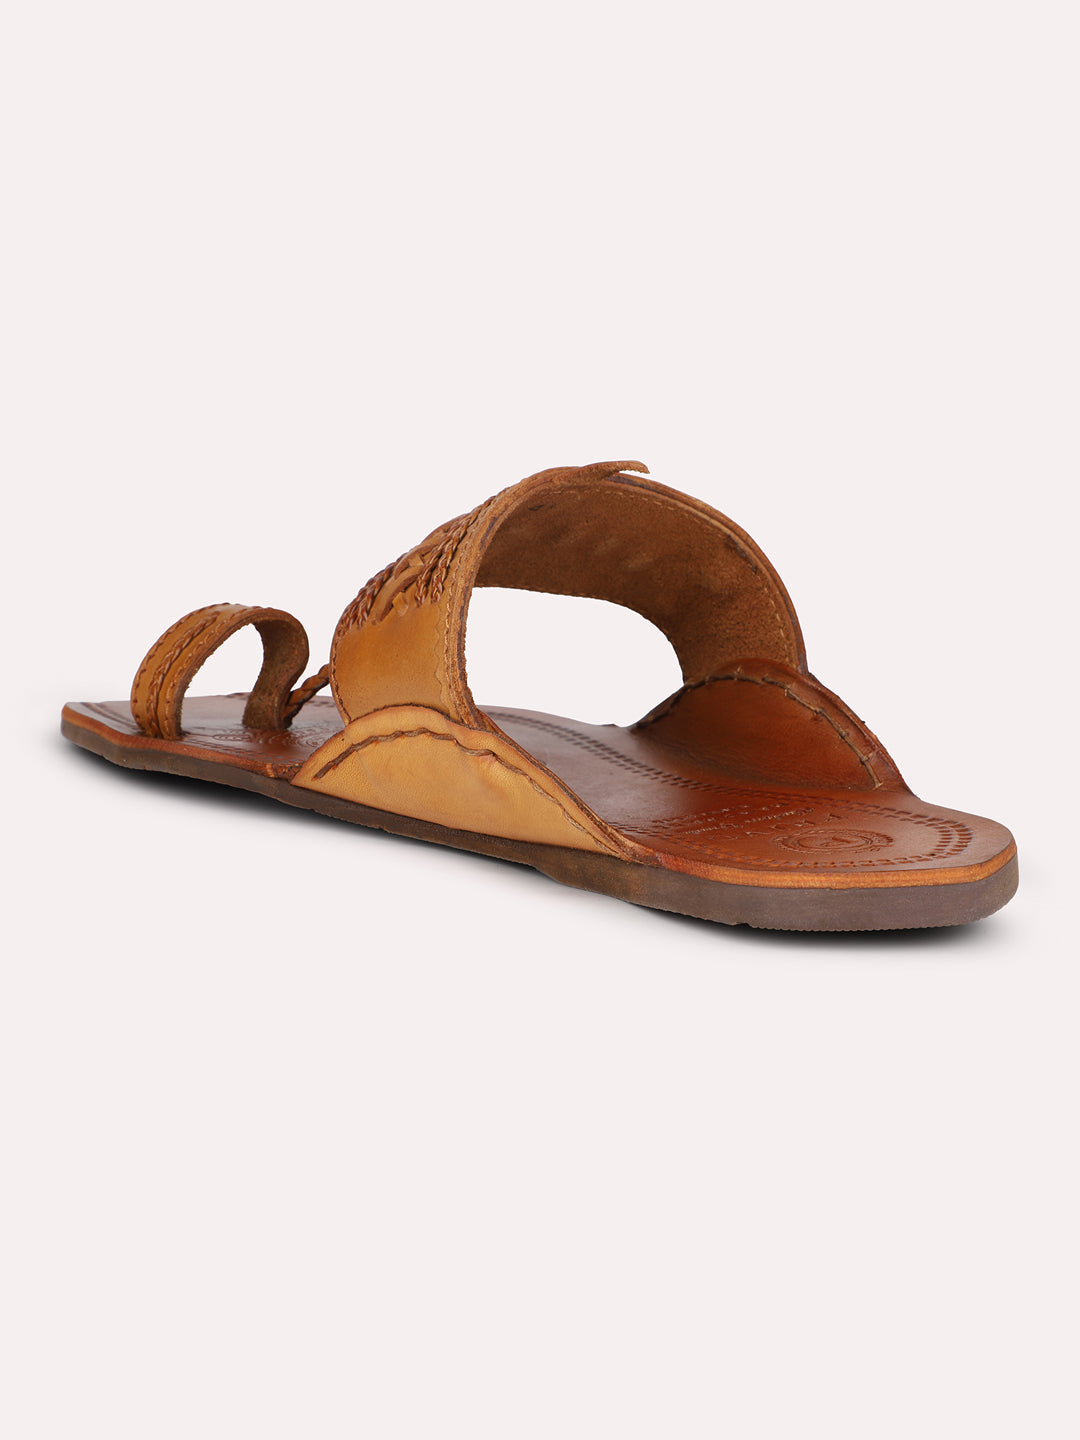 Privo Tan Kolhapuris Sandal for Men